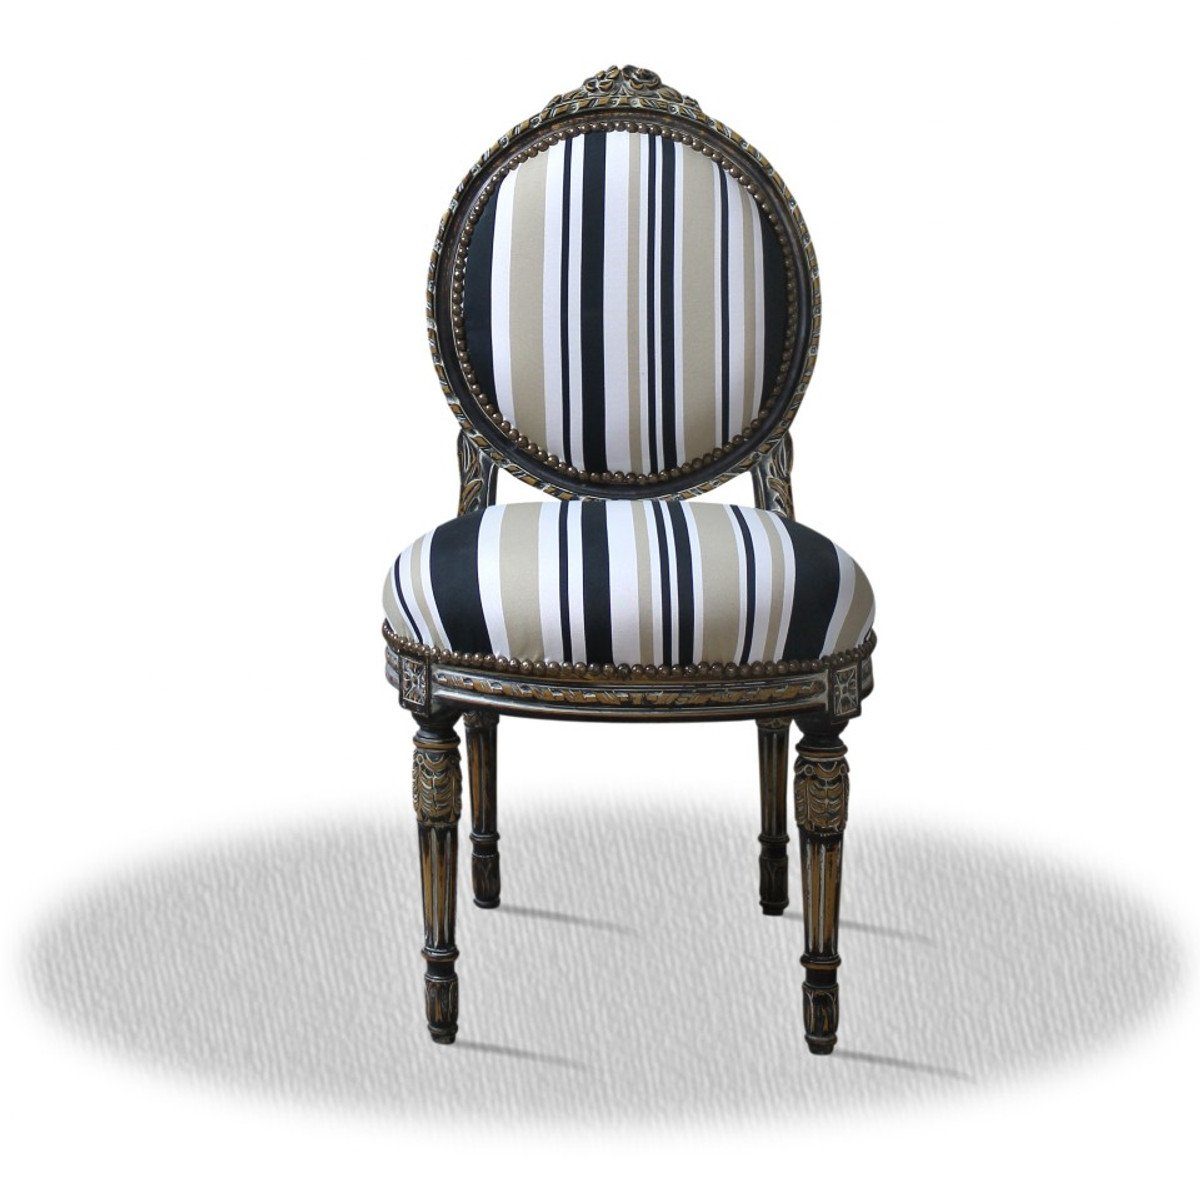 Casa Padrino Besucherstuhl Barock Salonstuhl mit Streifen 50 x 50 x H. 100 cm - Luxus Stuhl